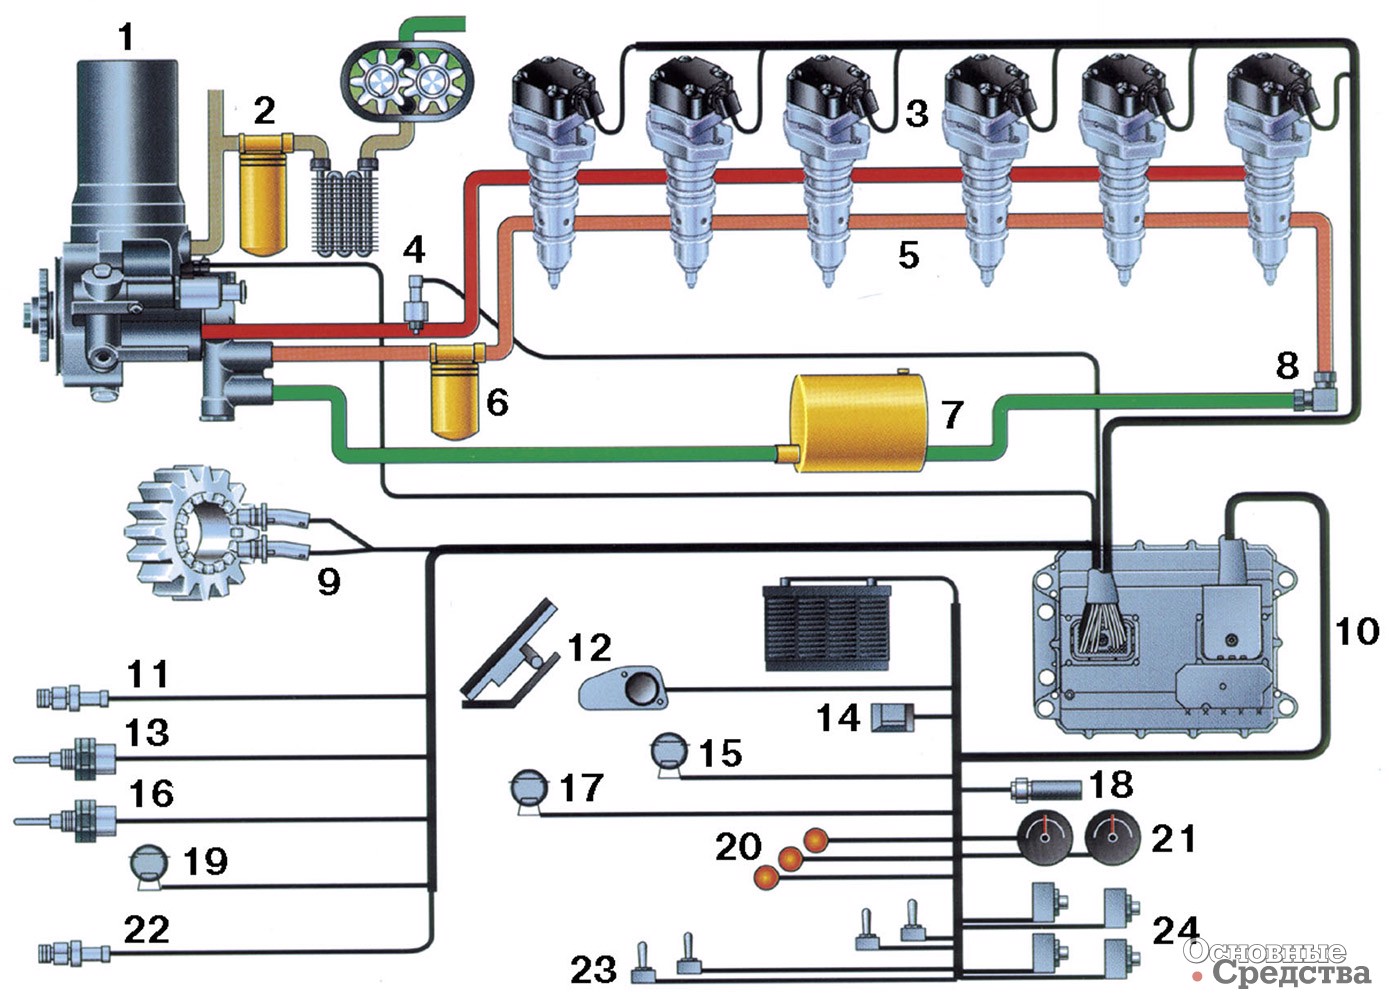 [b]Cхема системы HEUI:[/b] 1 – гидронасос; 2 – система смазки двигателя; 3 – насос-форсунки; 4 – электромагнитный клапан упарвления давлением в масляной магистрали высокого давления; 5 – топливная магистраль высокого давления; 6 – топливный фильтр; 7 – топливный бак; 8 – клапан поддерживания давления в топливной магистрали; 9 – датчик частоты вращения и момента впрыска ; 10 –электронный блок управления; 11 – датчик давления наддува; 12 – датчик положения педали «газа»; 13 – датчик температуры охлаждающей жидкости; 14 – интерфейс; 15 – реле горного тормоза (в системе выпуска); 16 – датчик температуры всасываемого воздуха; 17 – трансмиссионное реле; 18 – спид-сенсор машины; 19 – реле подогрева всасываемого воздуха; 20 – контрольные лампы; 21 – спидометр и тахометр; 22 – датчик атмосферного давления; 23 – включатели специальных режимов; 24 – концевые выключатели («нейтраль», стояночный тормоз)